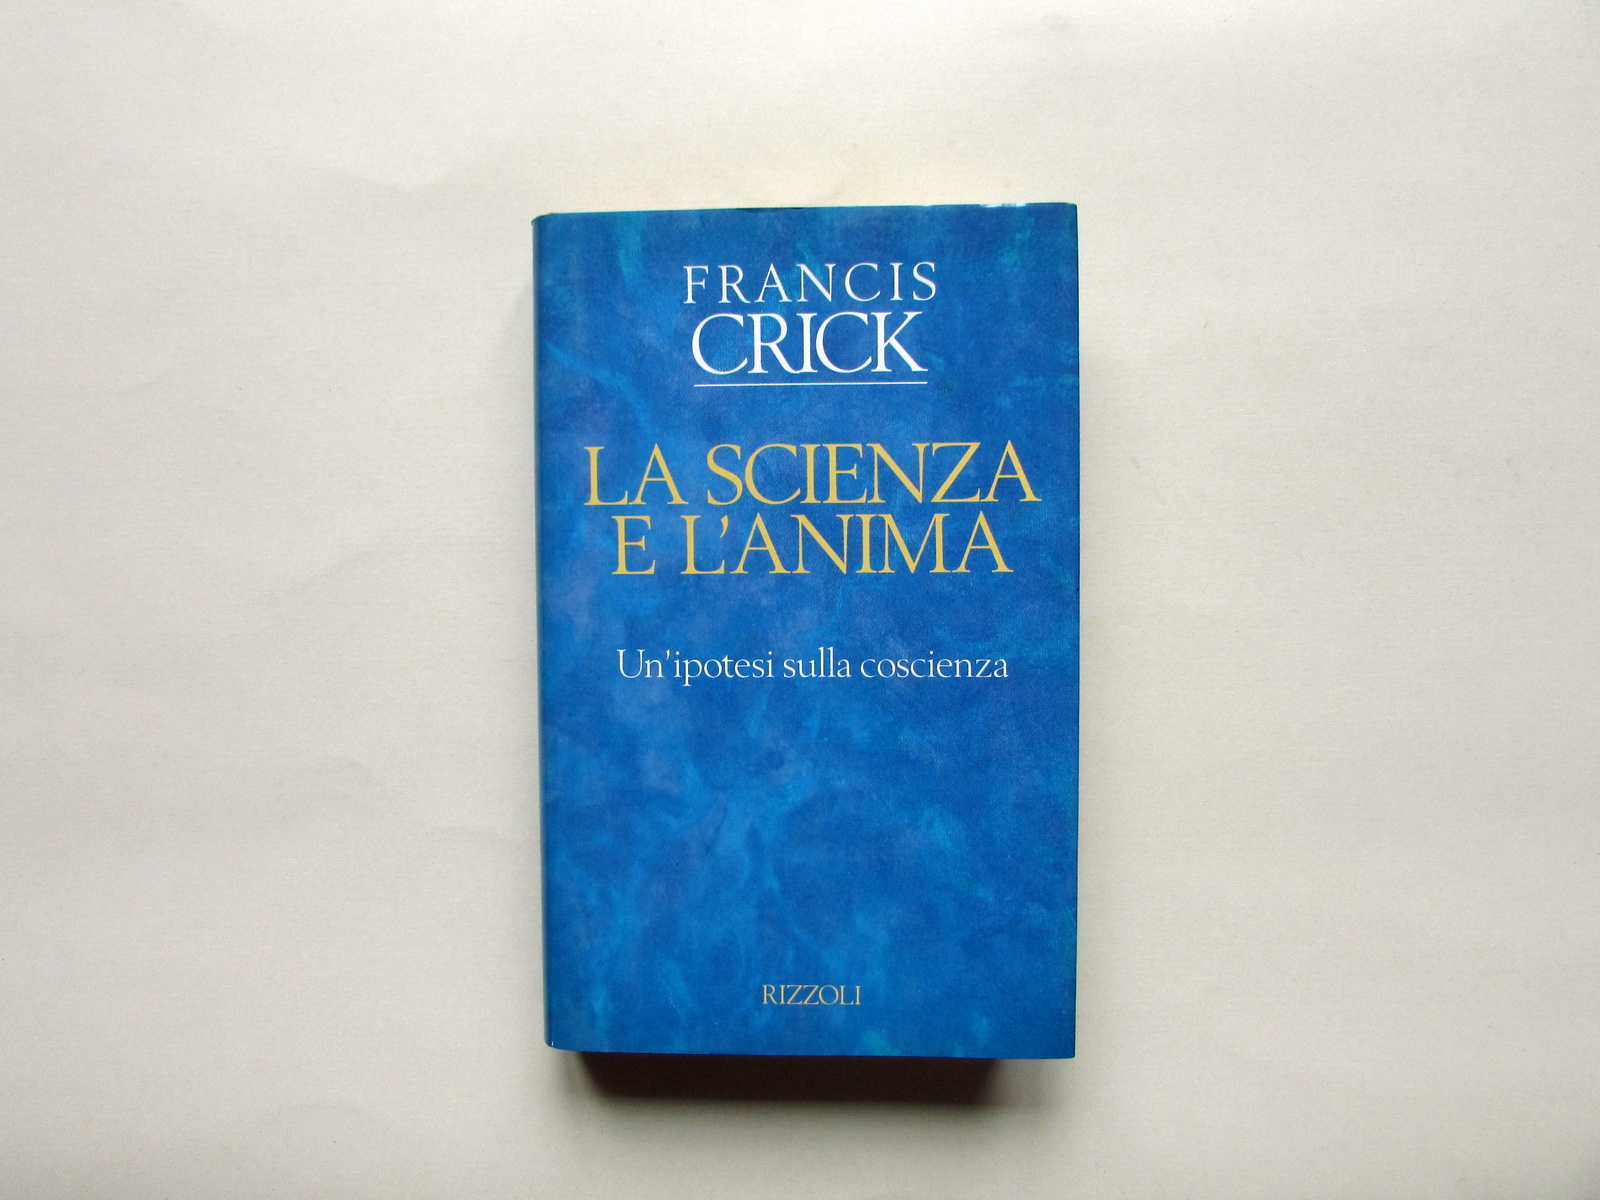 Francis Crick La Scienza e l'Anima Rizzoli Milano 1994